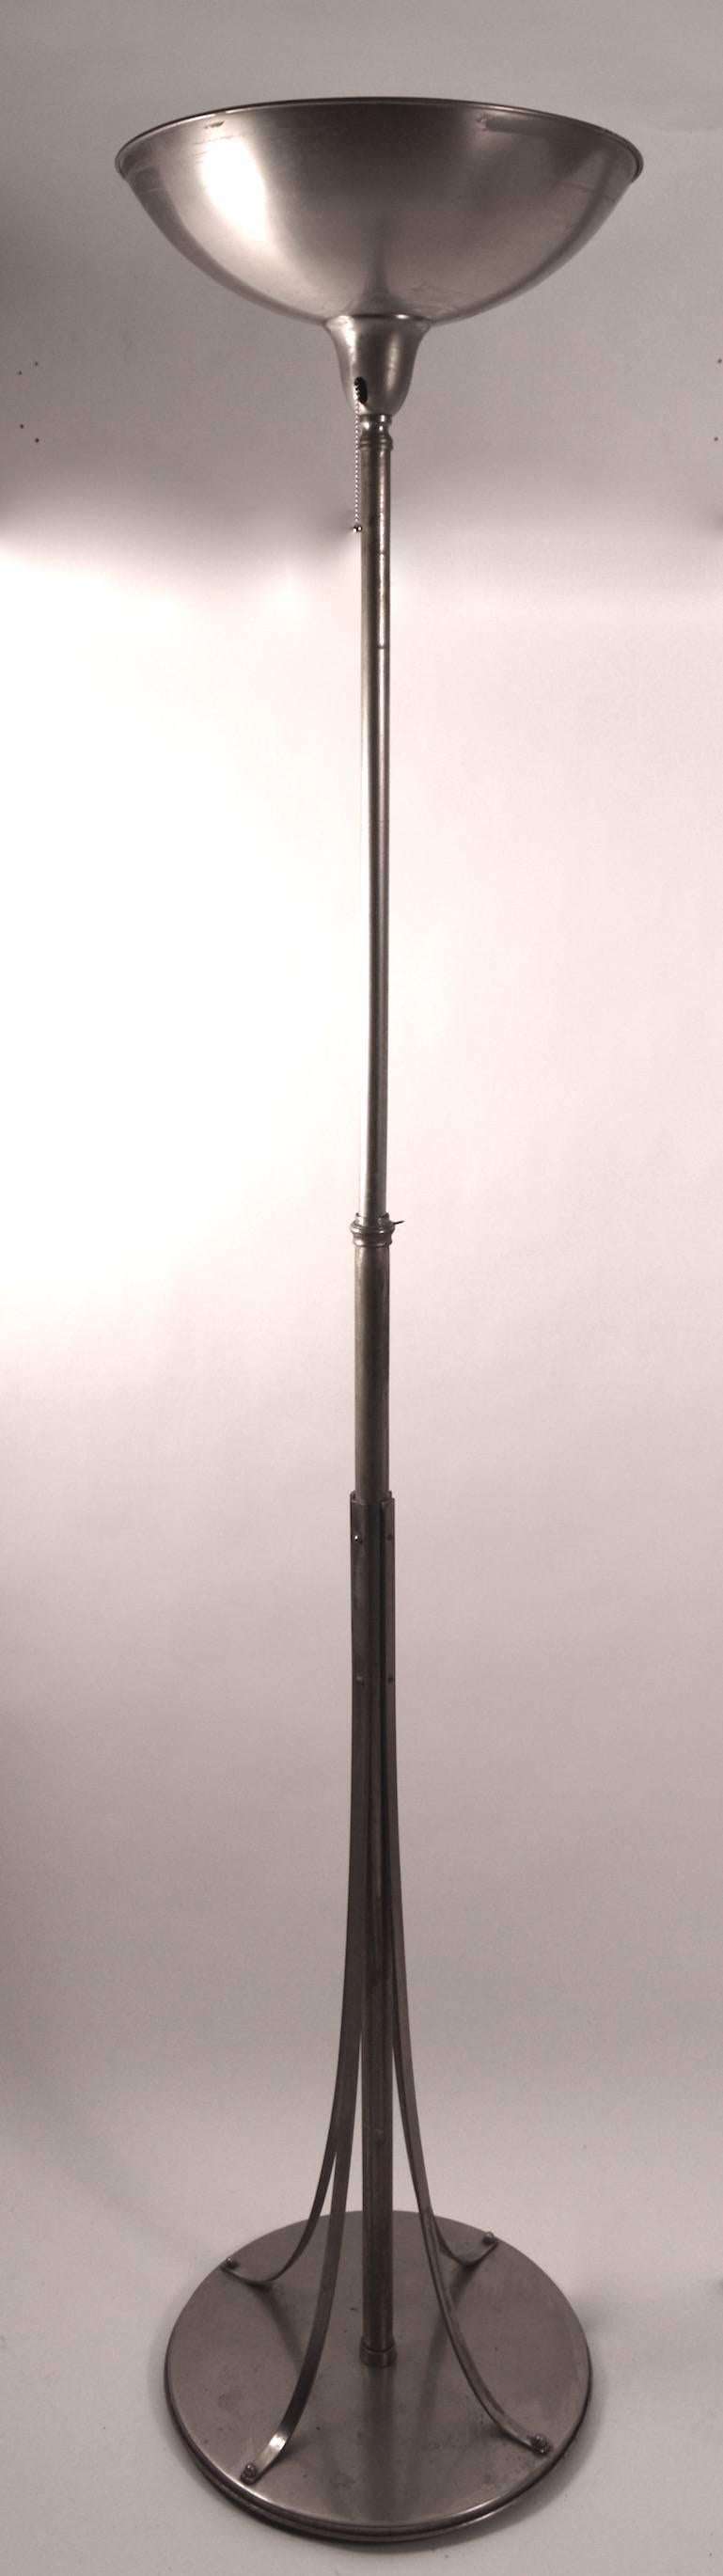 Ce lampadaire torchère Art déco de l'ère mécanique se trouvait à l'origine dans le bureau de design de l'important et célèbre designer, l'artiste Hugo Gnam, qui a en fait conçu lui-même cette lampe pour son usage personnel. La lampe est réglable en